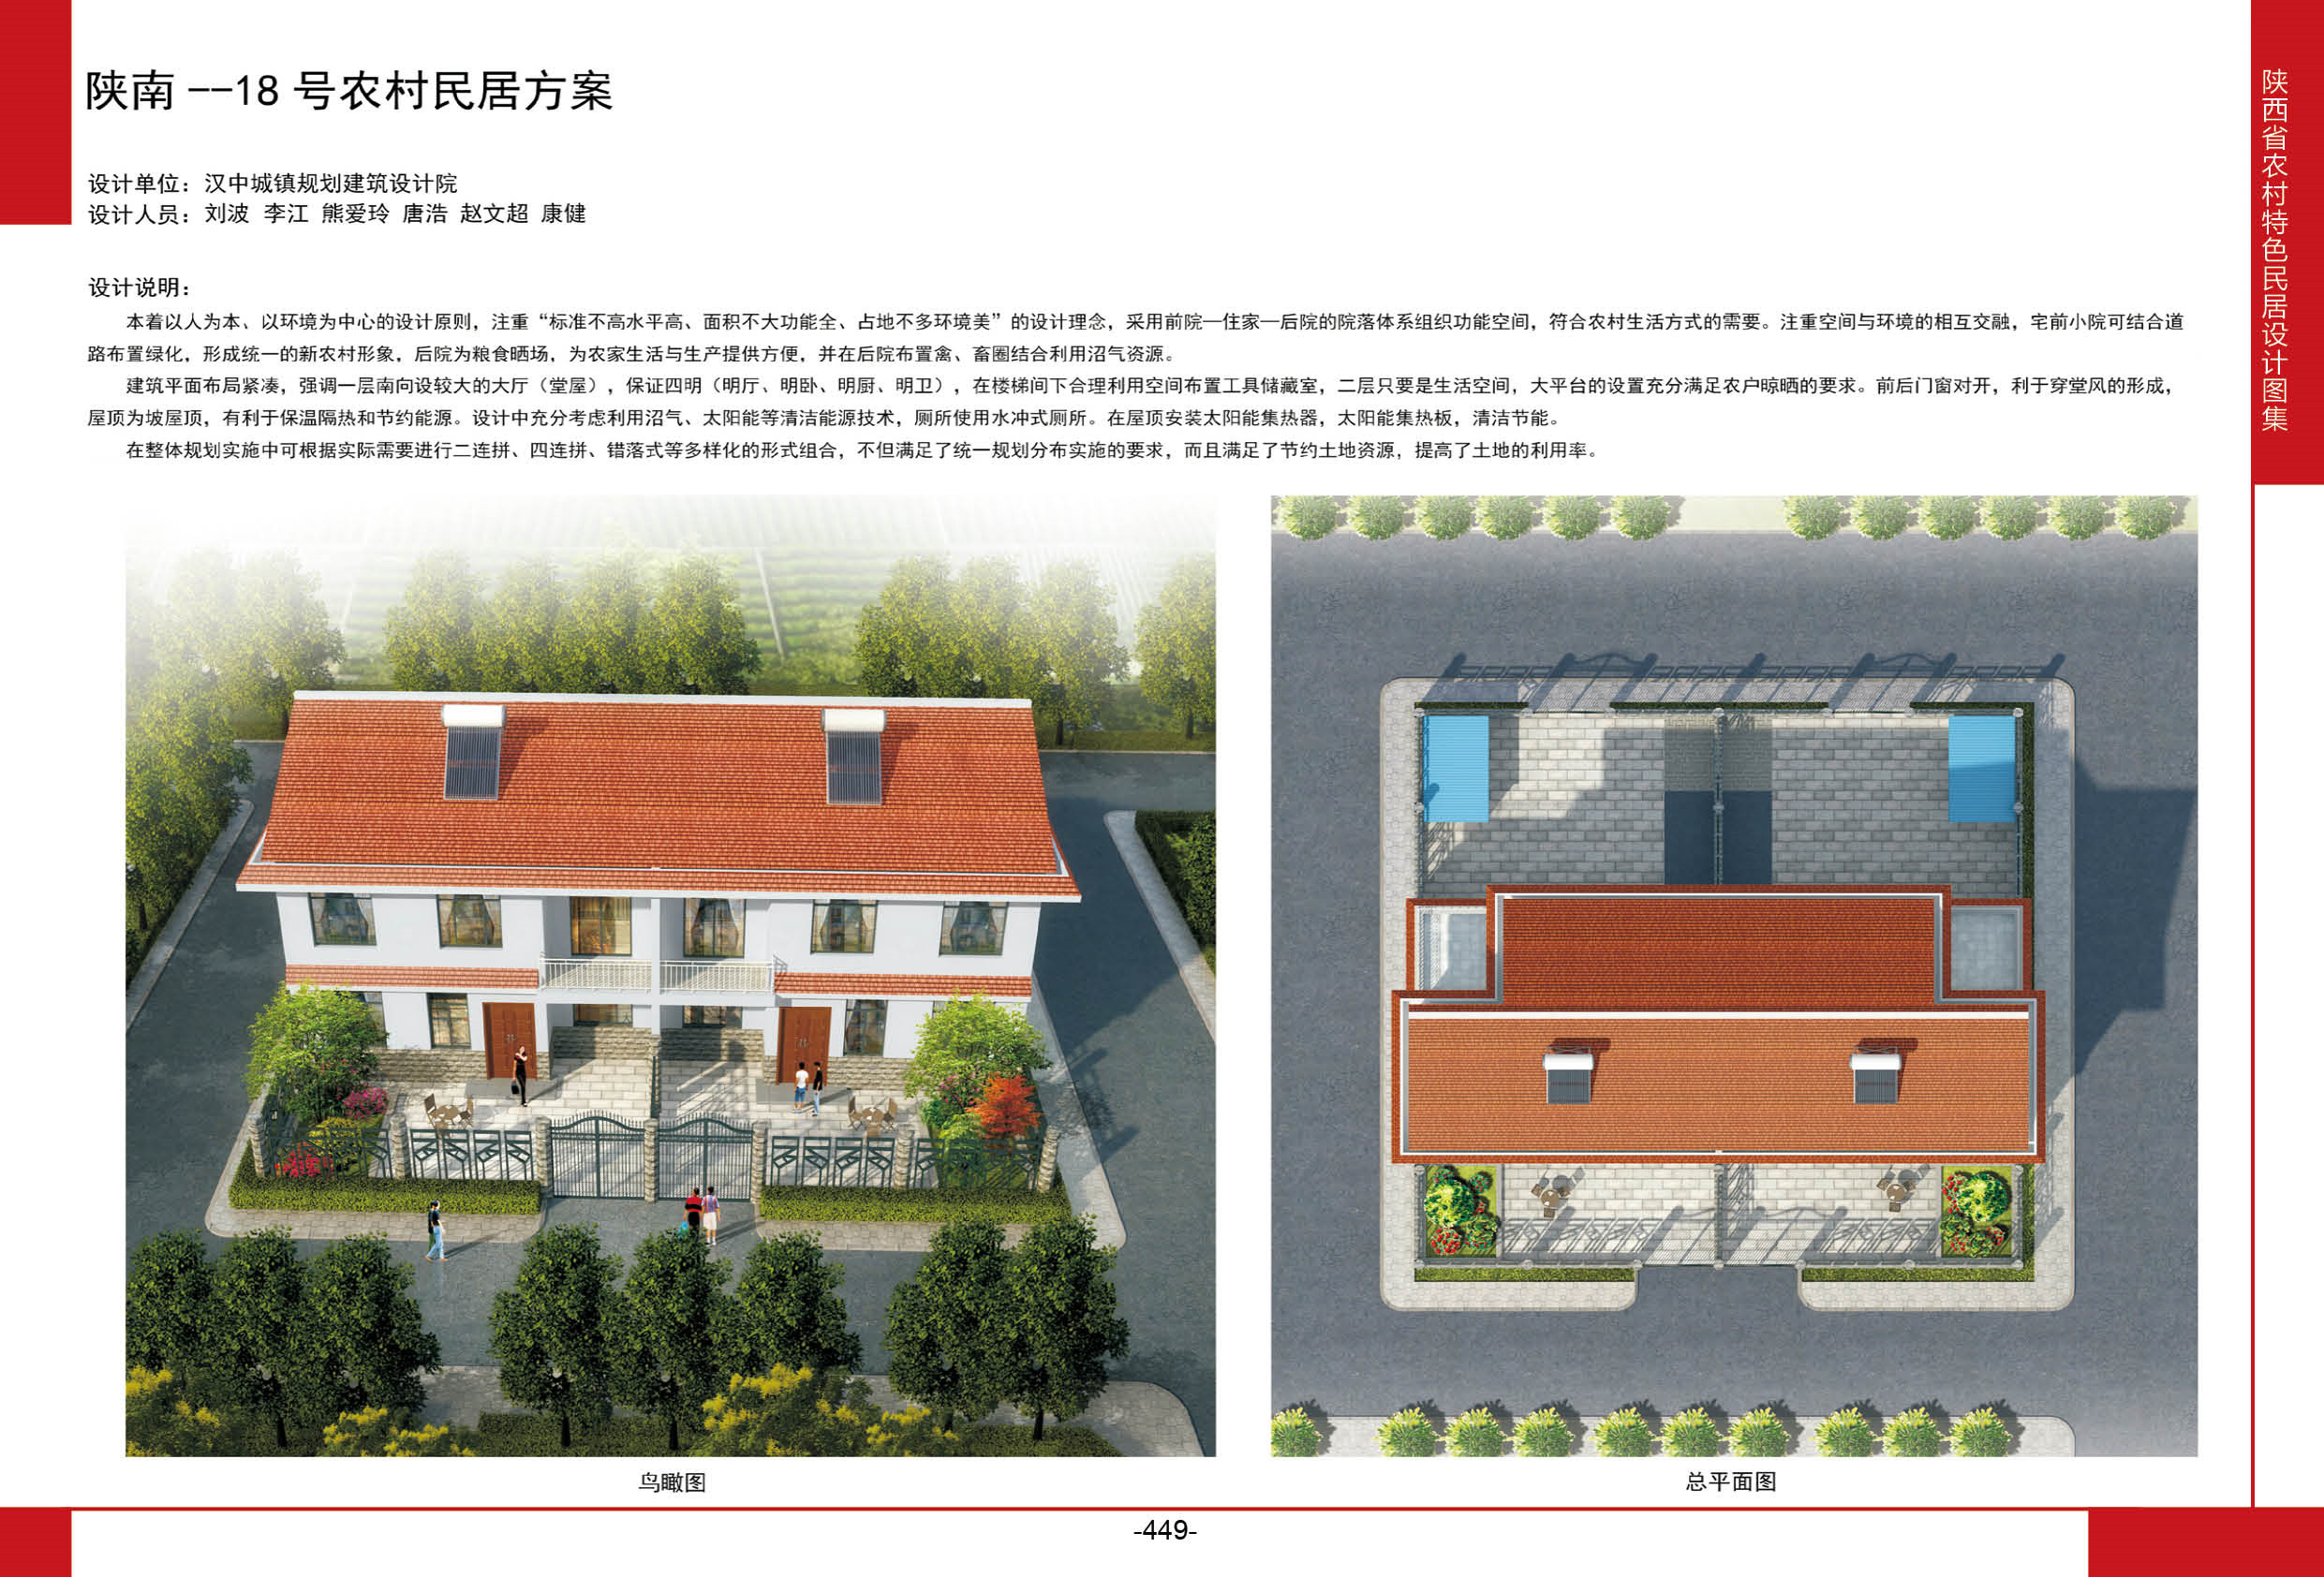 陕西省农村特色民居设计图集-陕南—18号农村民居方案